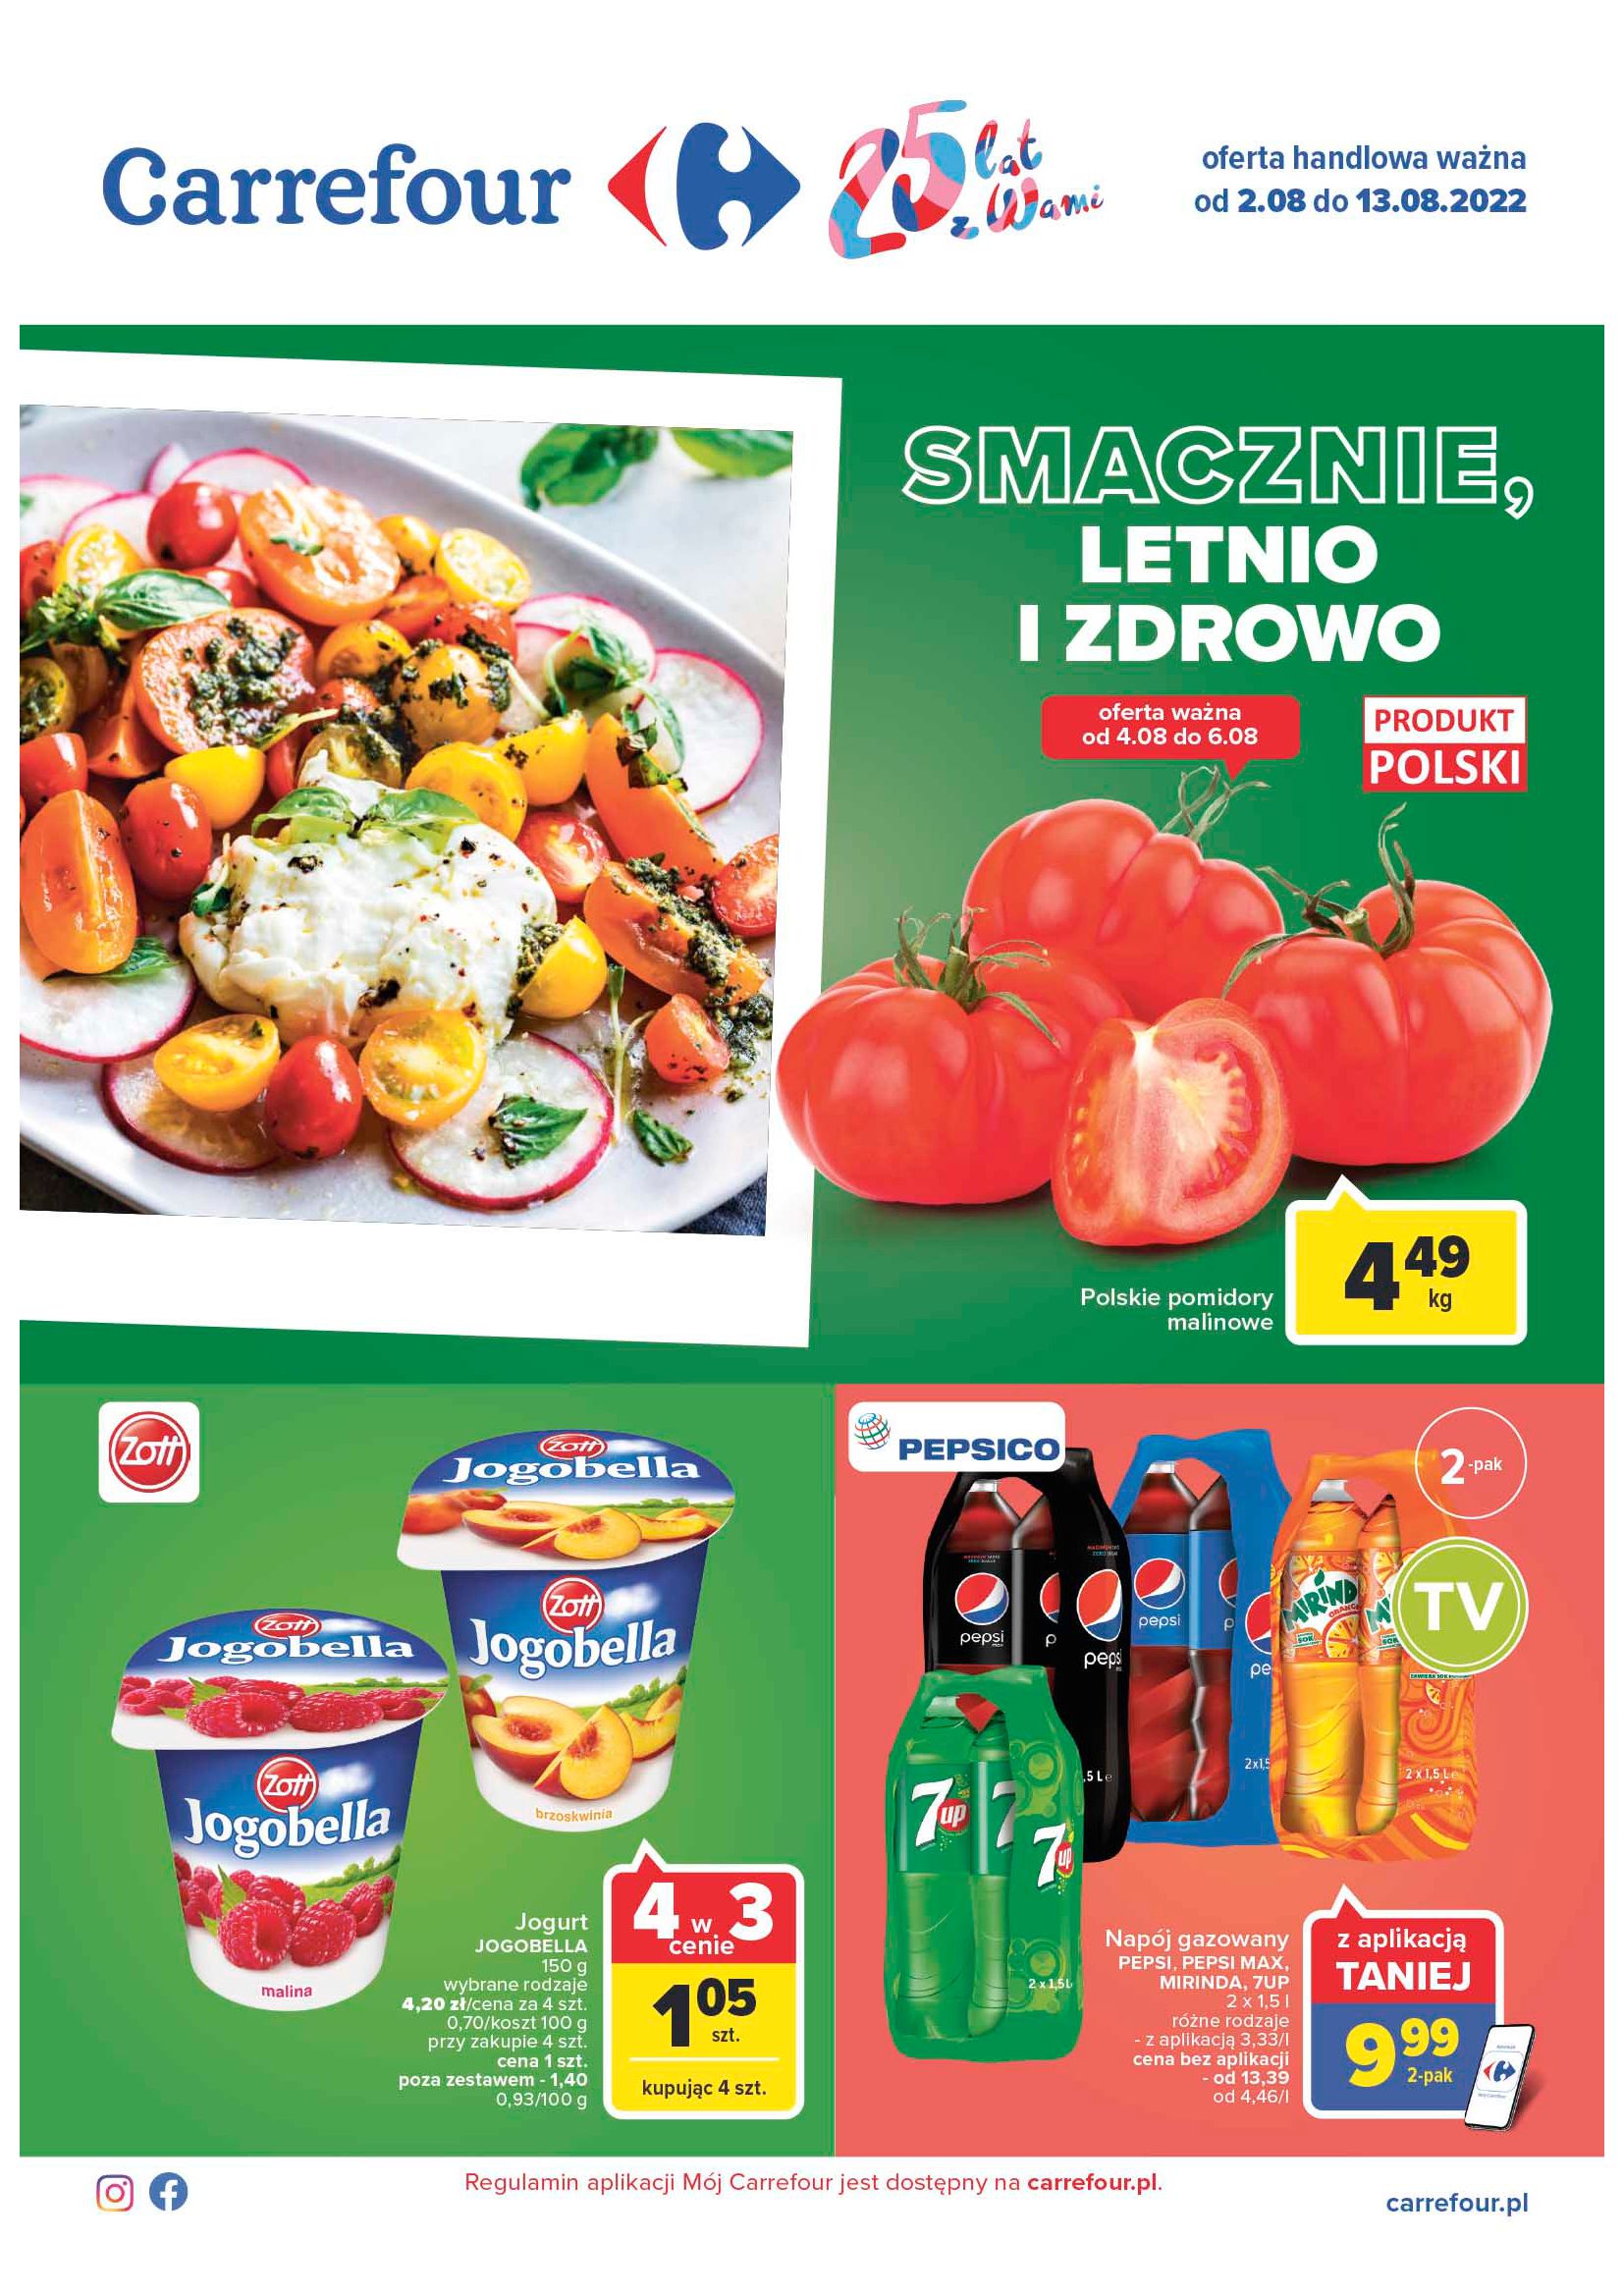 Gazetka Carrefour: Gazetka Carrefour - Smacznie, letnio i zdrowo 2022-08-02 page-1